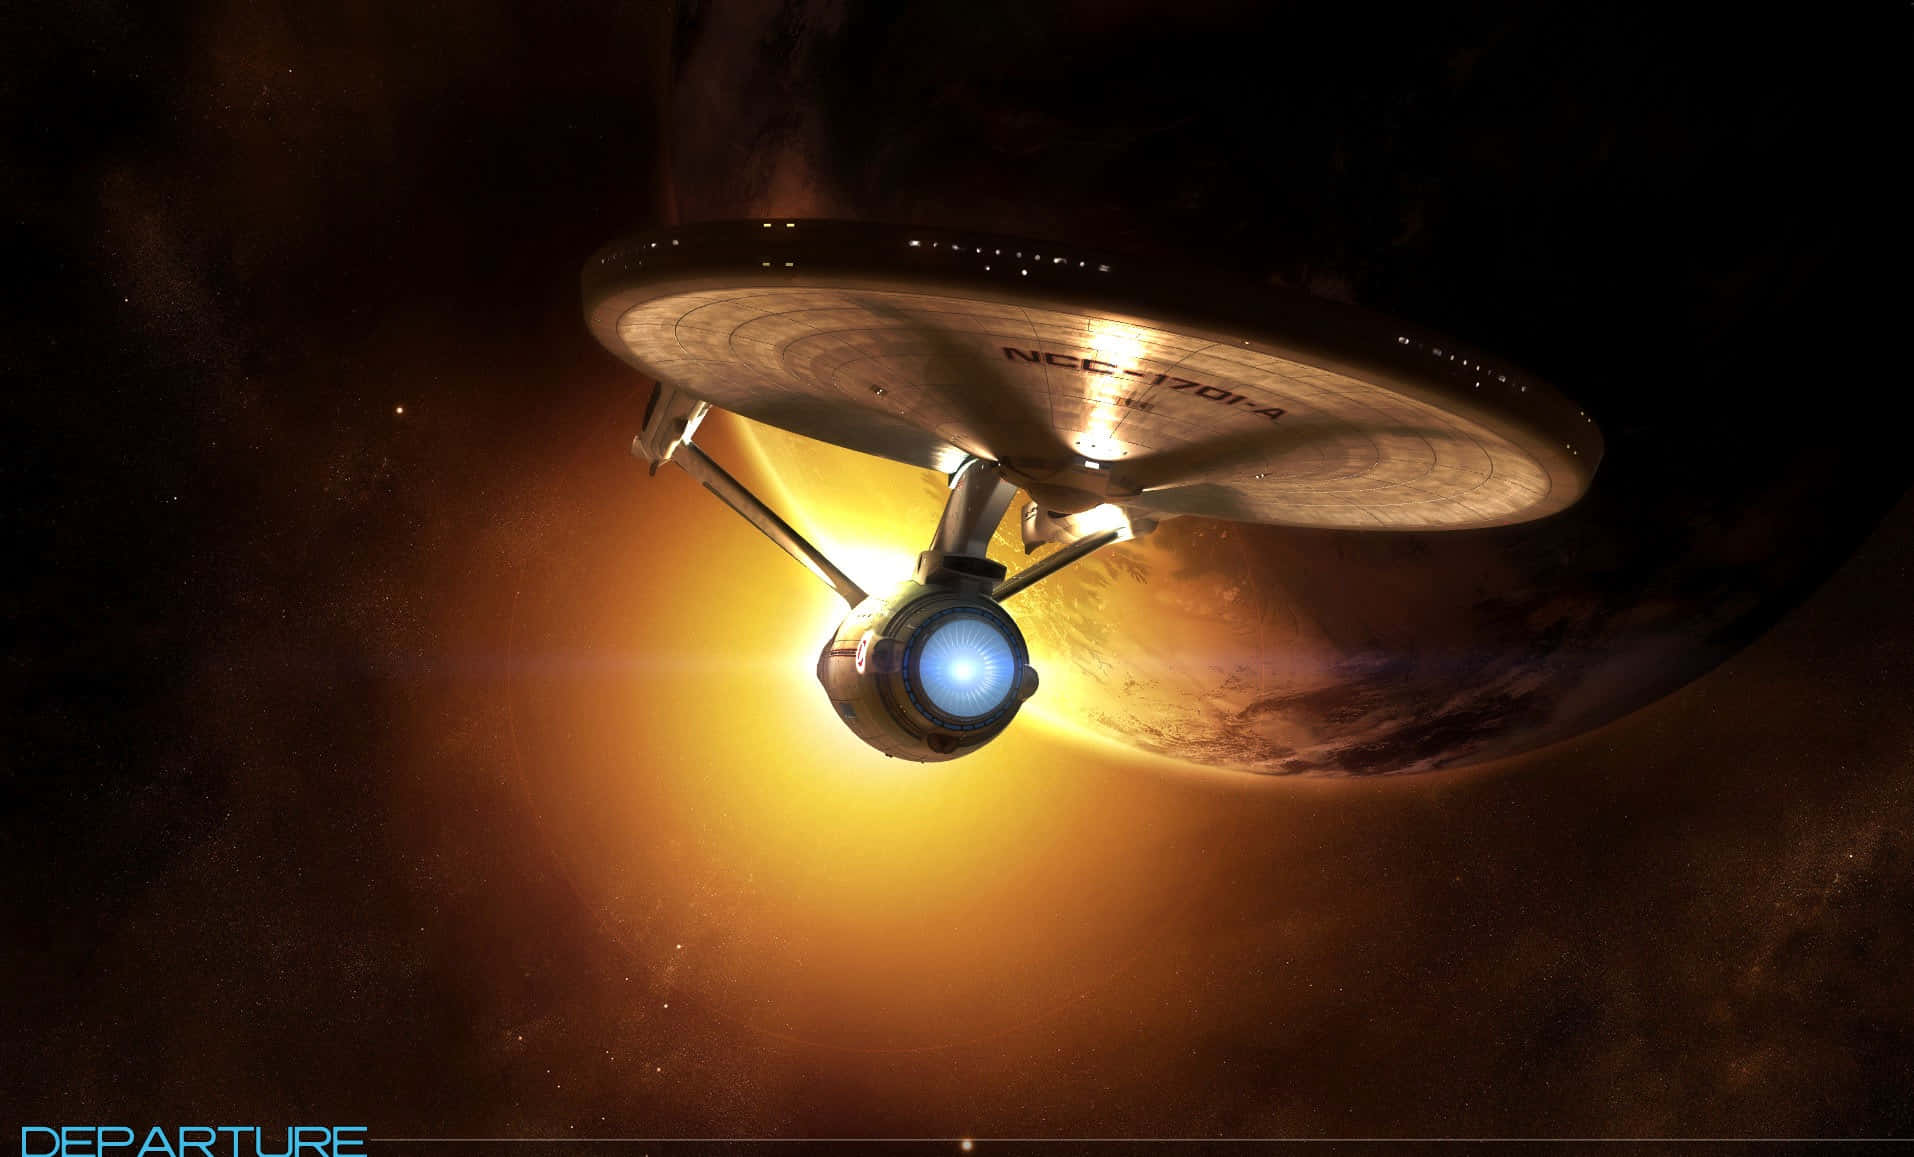 Nyd de ikoniske stjerner og fremtidsorienterede vibes fra Star Trek Zoom.